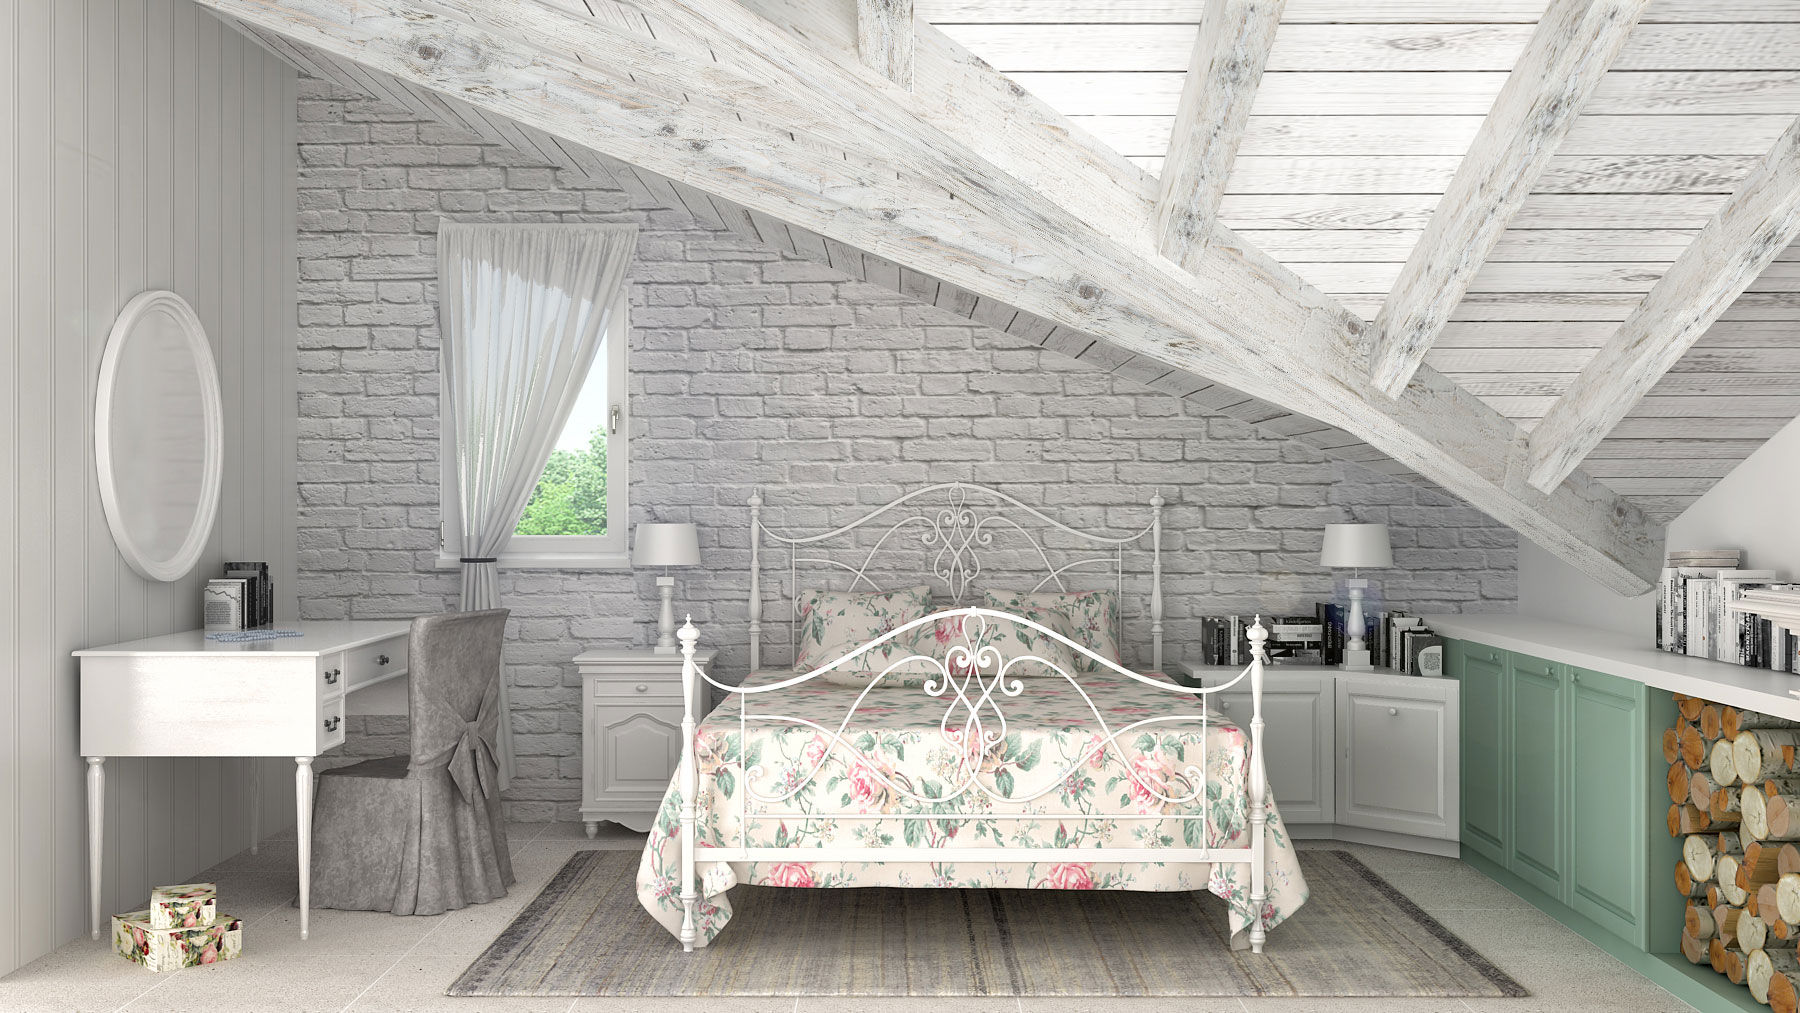 Camera da letto homify Camera da letto in stile rustico Legno Effetto legno camera da letto,mattoncini,copertura legno,fiori,bianco